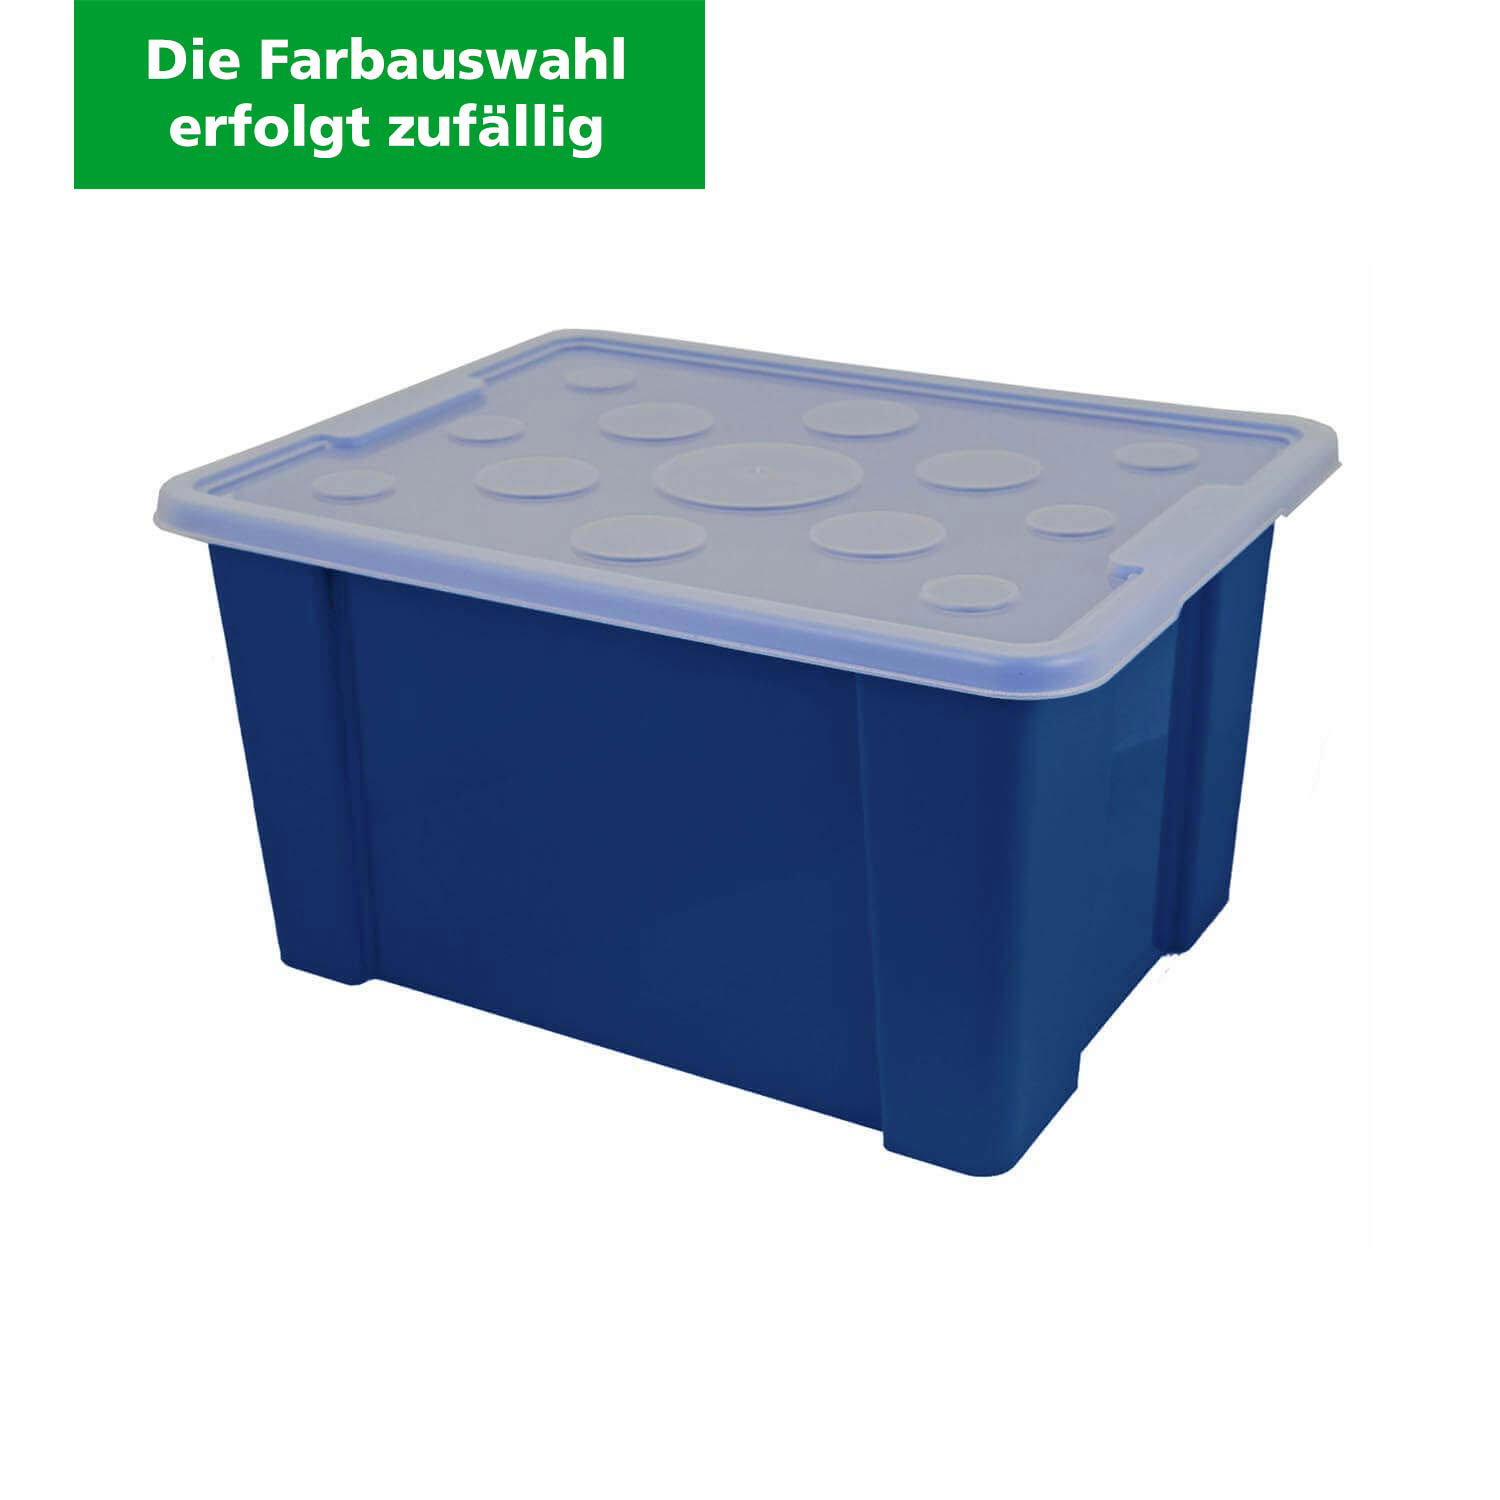 Aufbewahrungsbox "Unibox" 30 L, Kunststoffbox (Die Farbauswahl erfolgt zufällig)